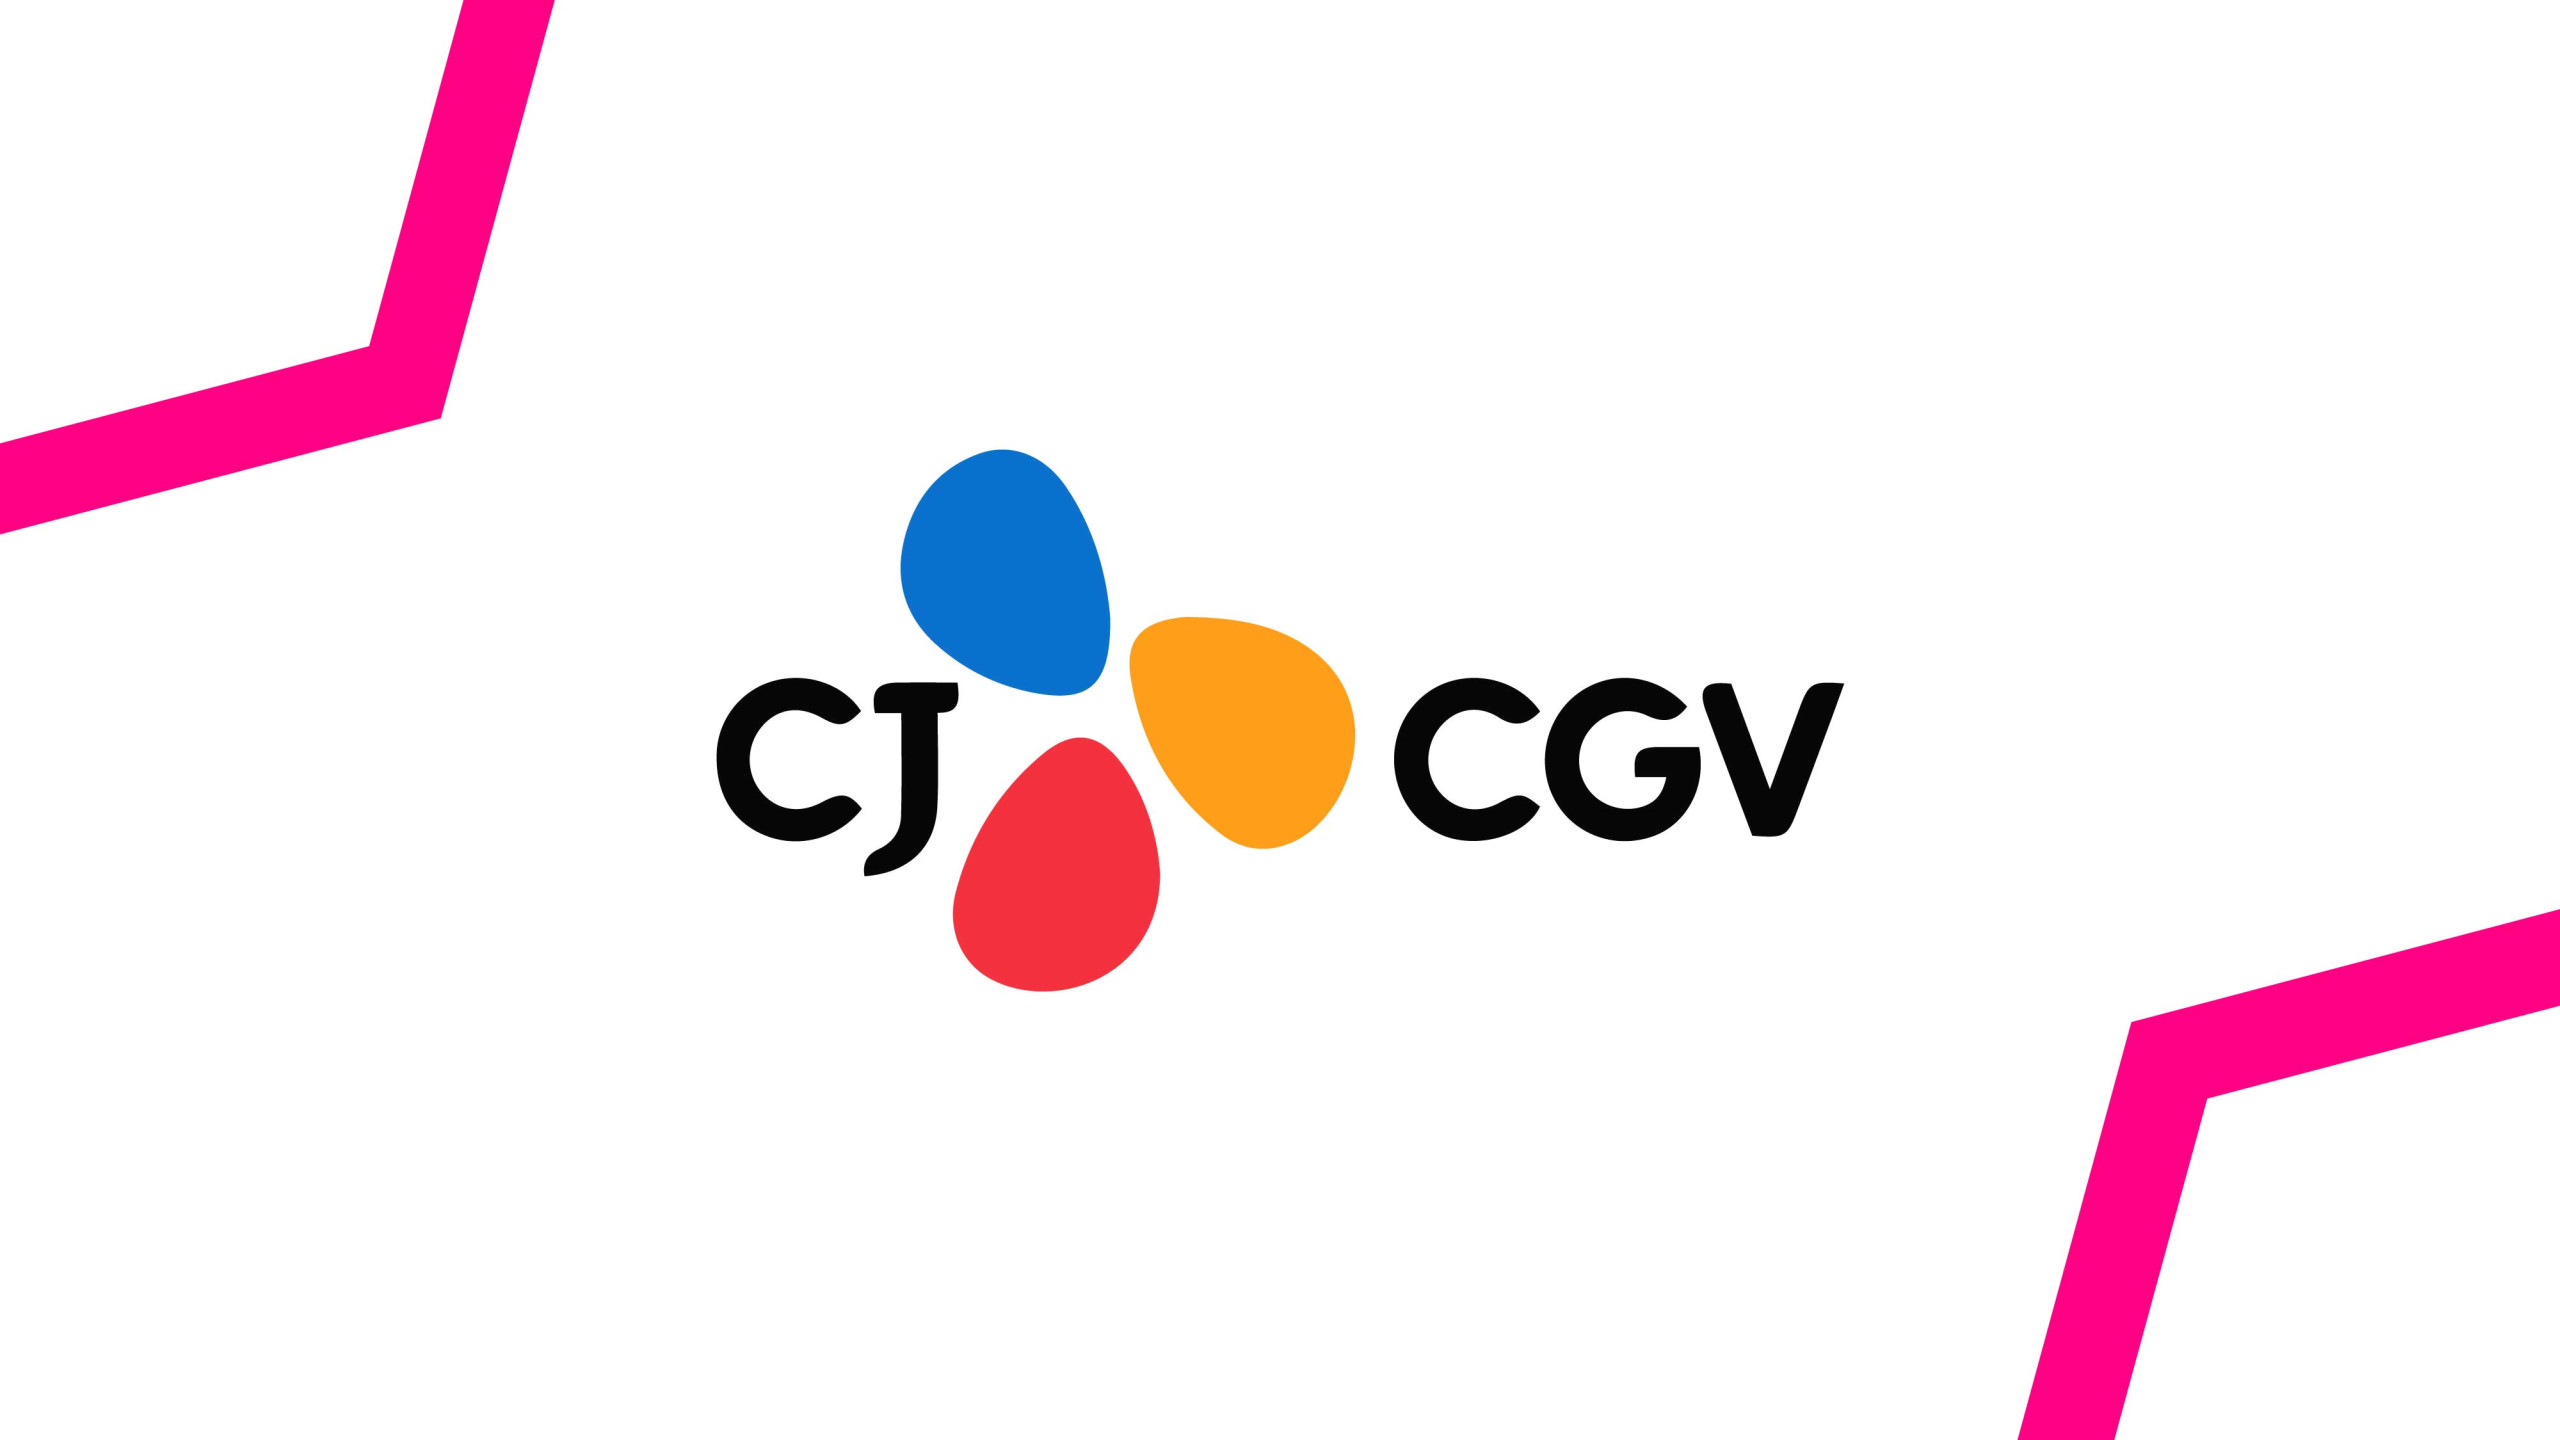 국내외 광고주들은 하이브스택을 통해 CJ CGV의 프리미엄 인벤토리를 구매할 수 있게 돼